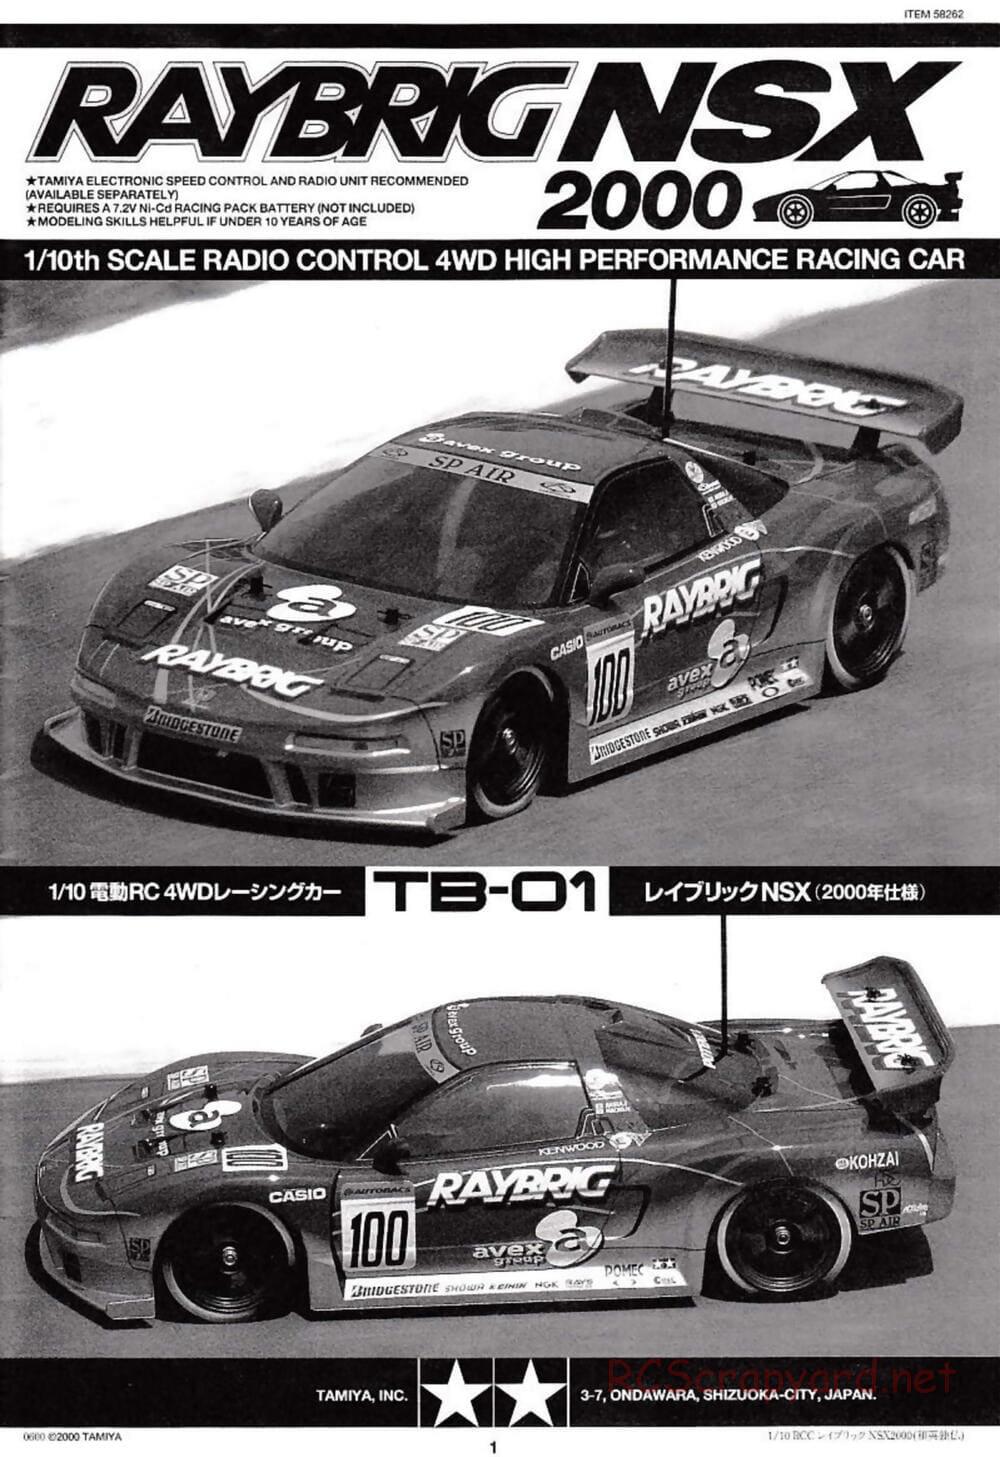 Tamiya - Raybrig NSX 2000 - TB-01 Chassis - Manual - Page 1